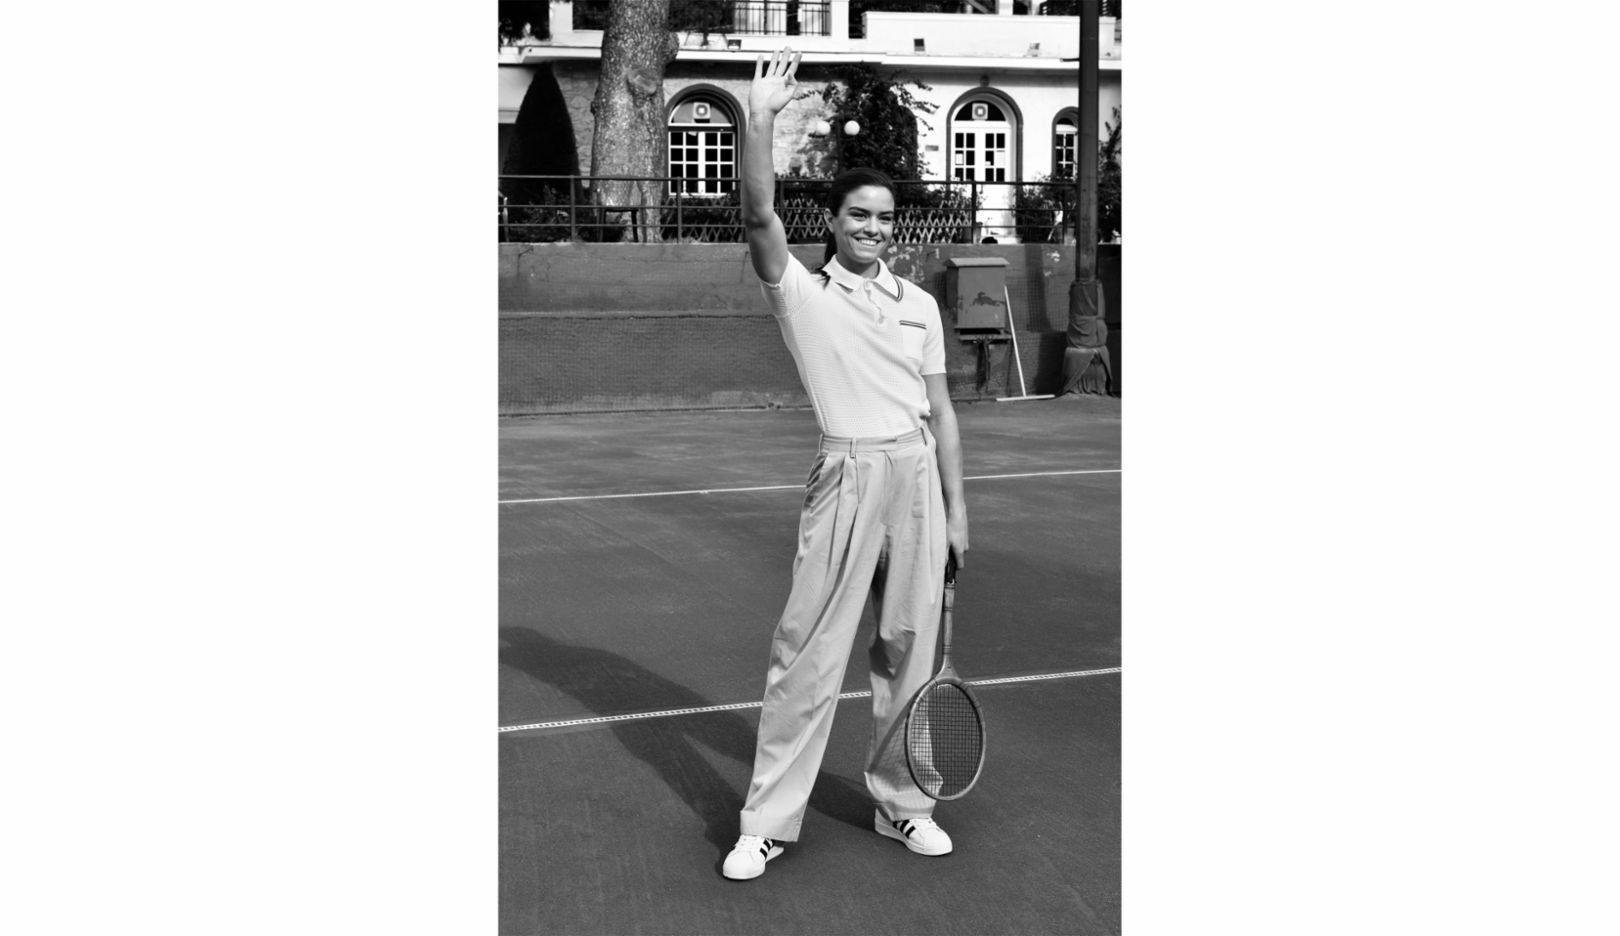 Maria Sakkari no Athens Lawn Tennis Club. “A foto é uma homenagem às décadas de 1930 e 1940”, explica Radka Leitmeritz. “Maria cresceu em Atenas. Os avós e a mãe dela já jogavam tênis nesse antigo clube. Por isso quis retratá-la nesse lugar e com esse visual.” 